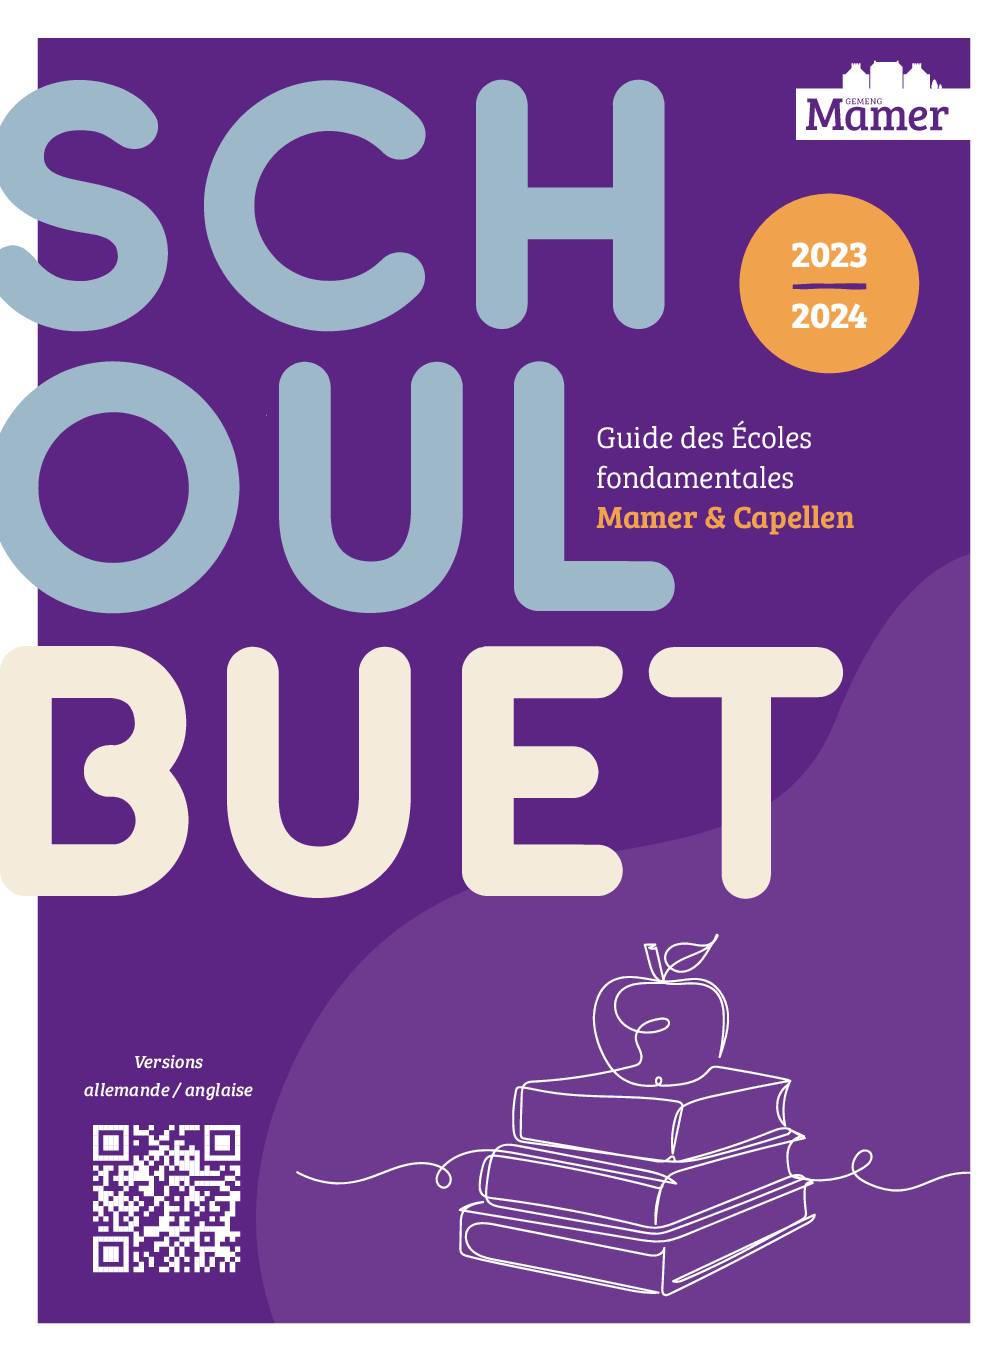 Schoulbuet-2023-2024-FR